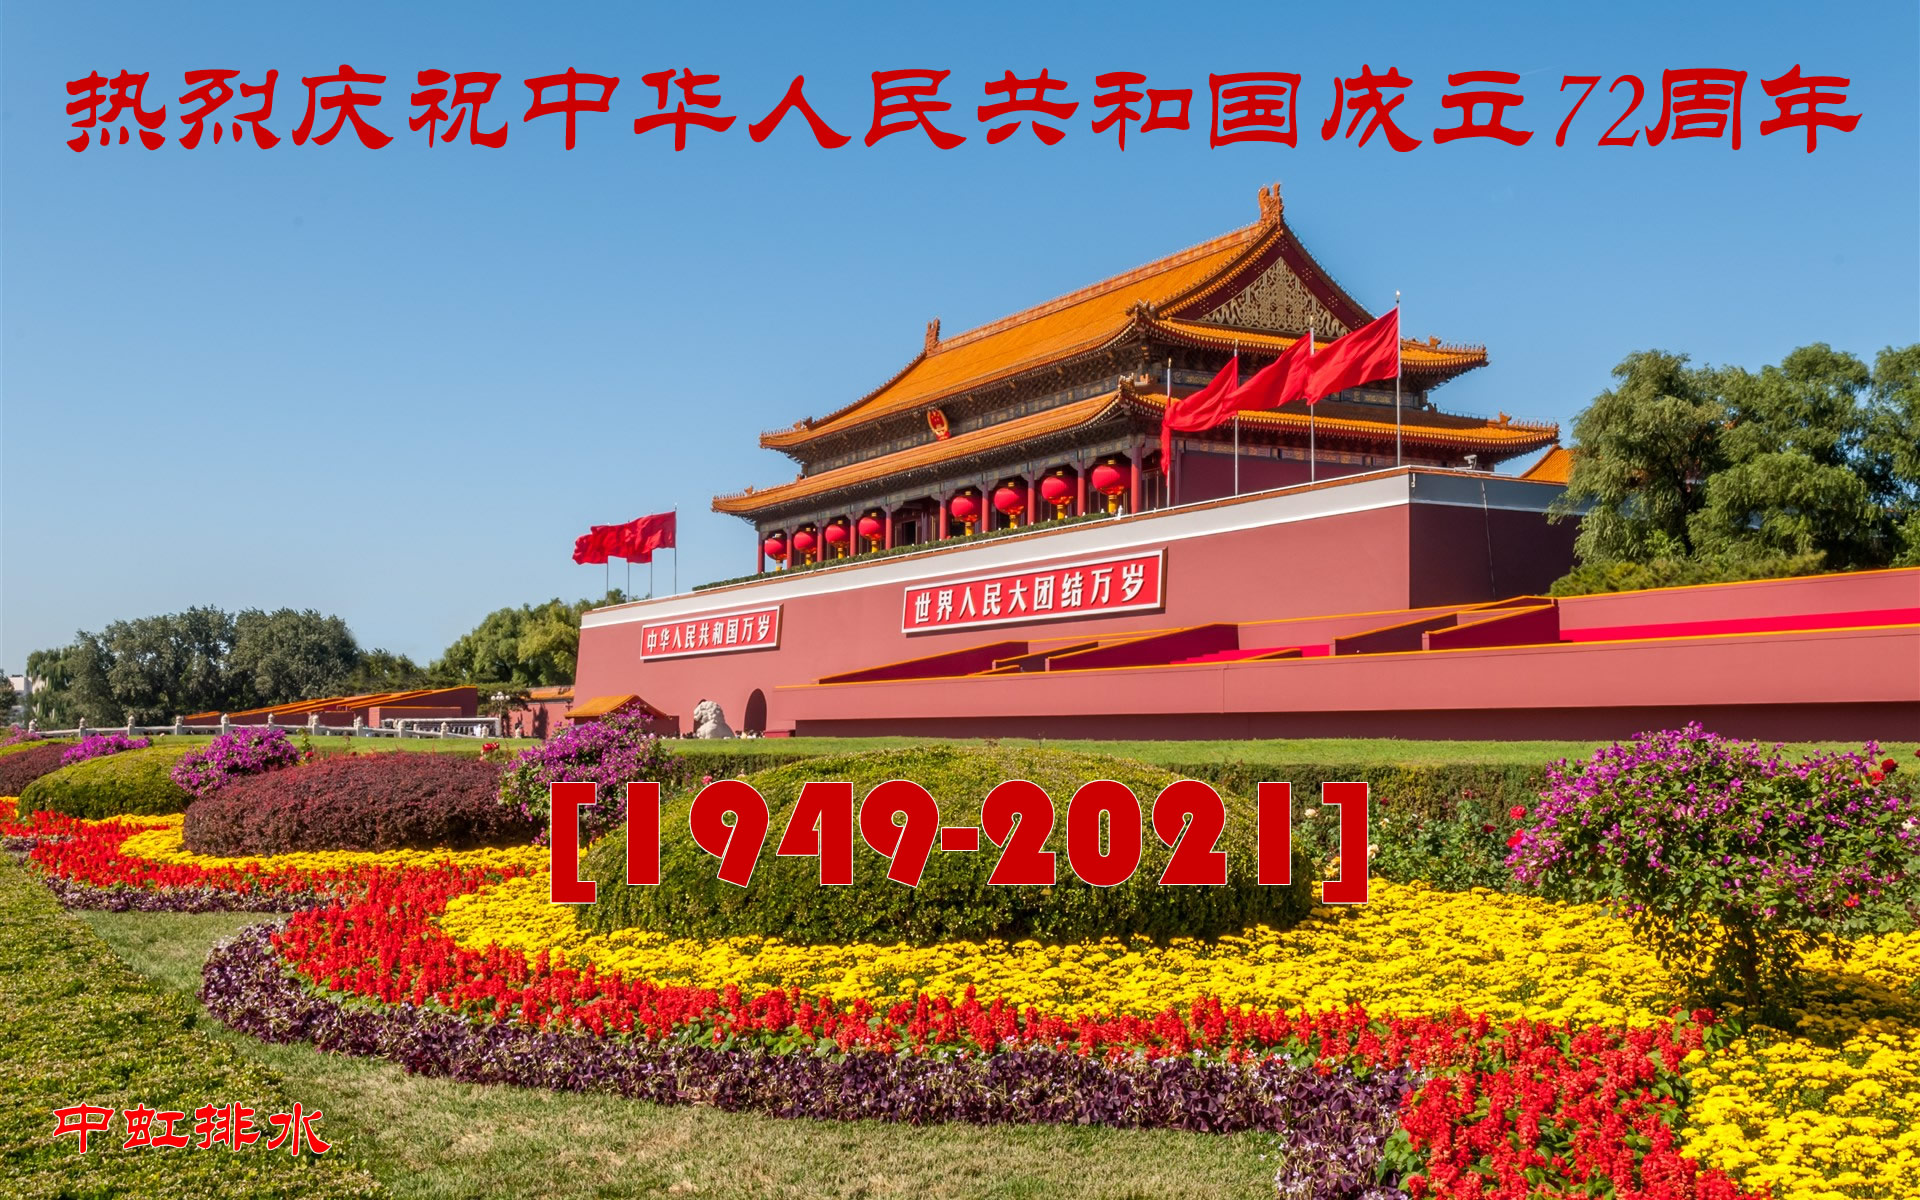 热烈庆祝中华人民共和国成立72周年